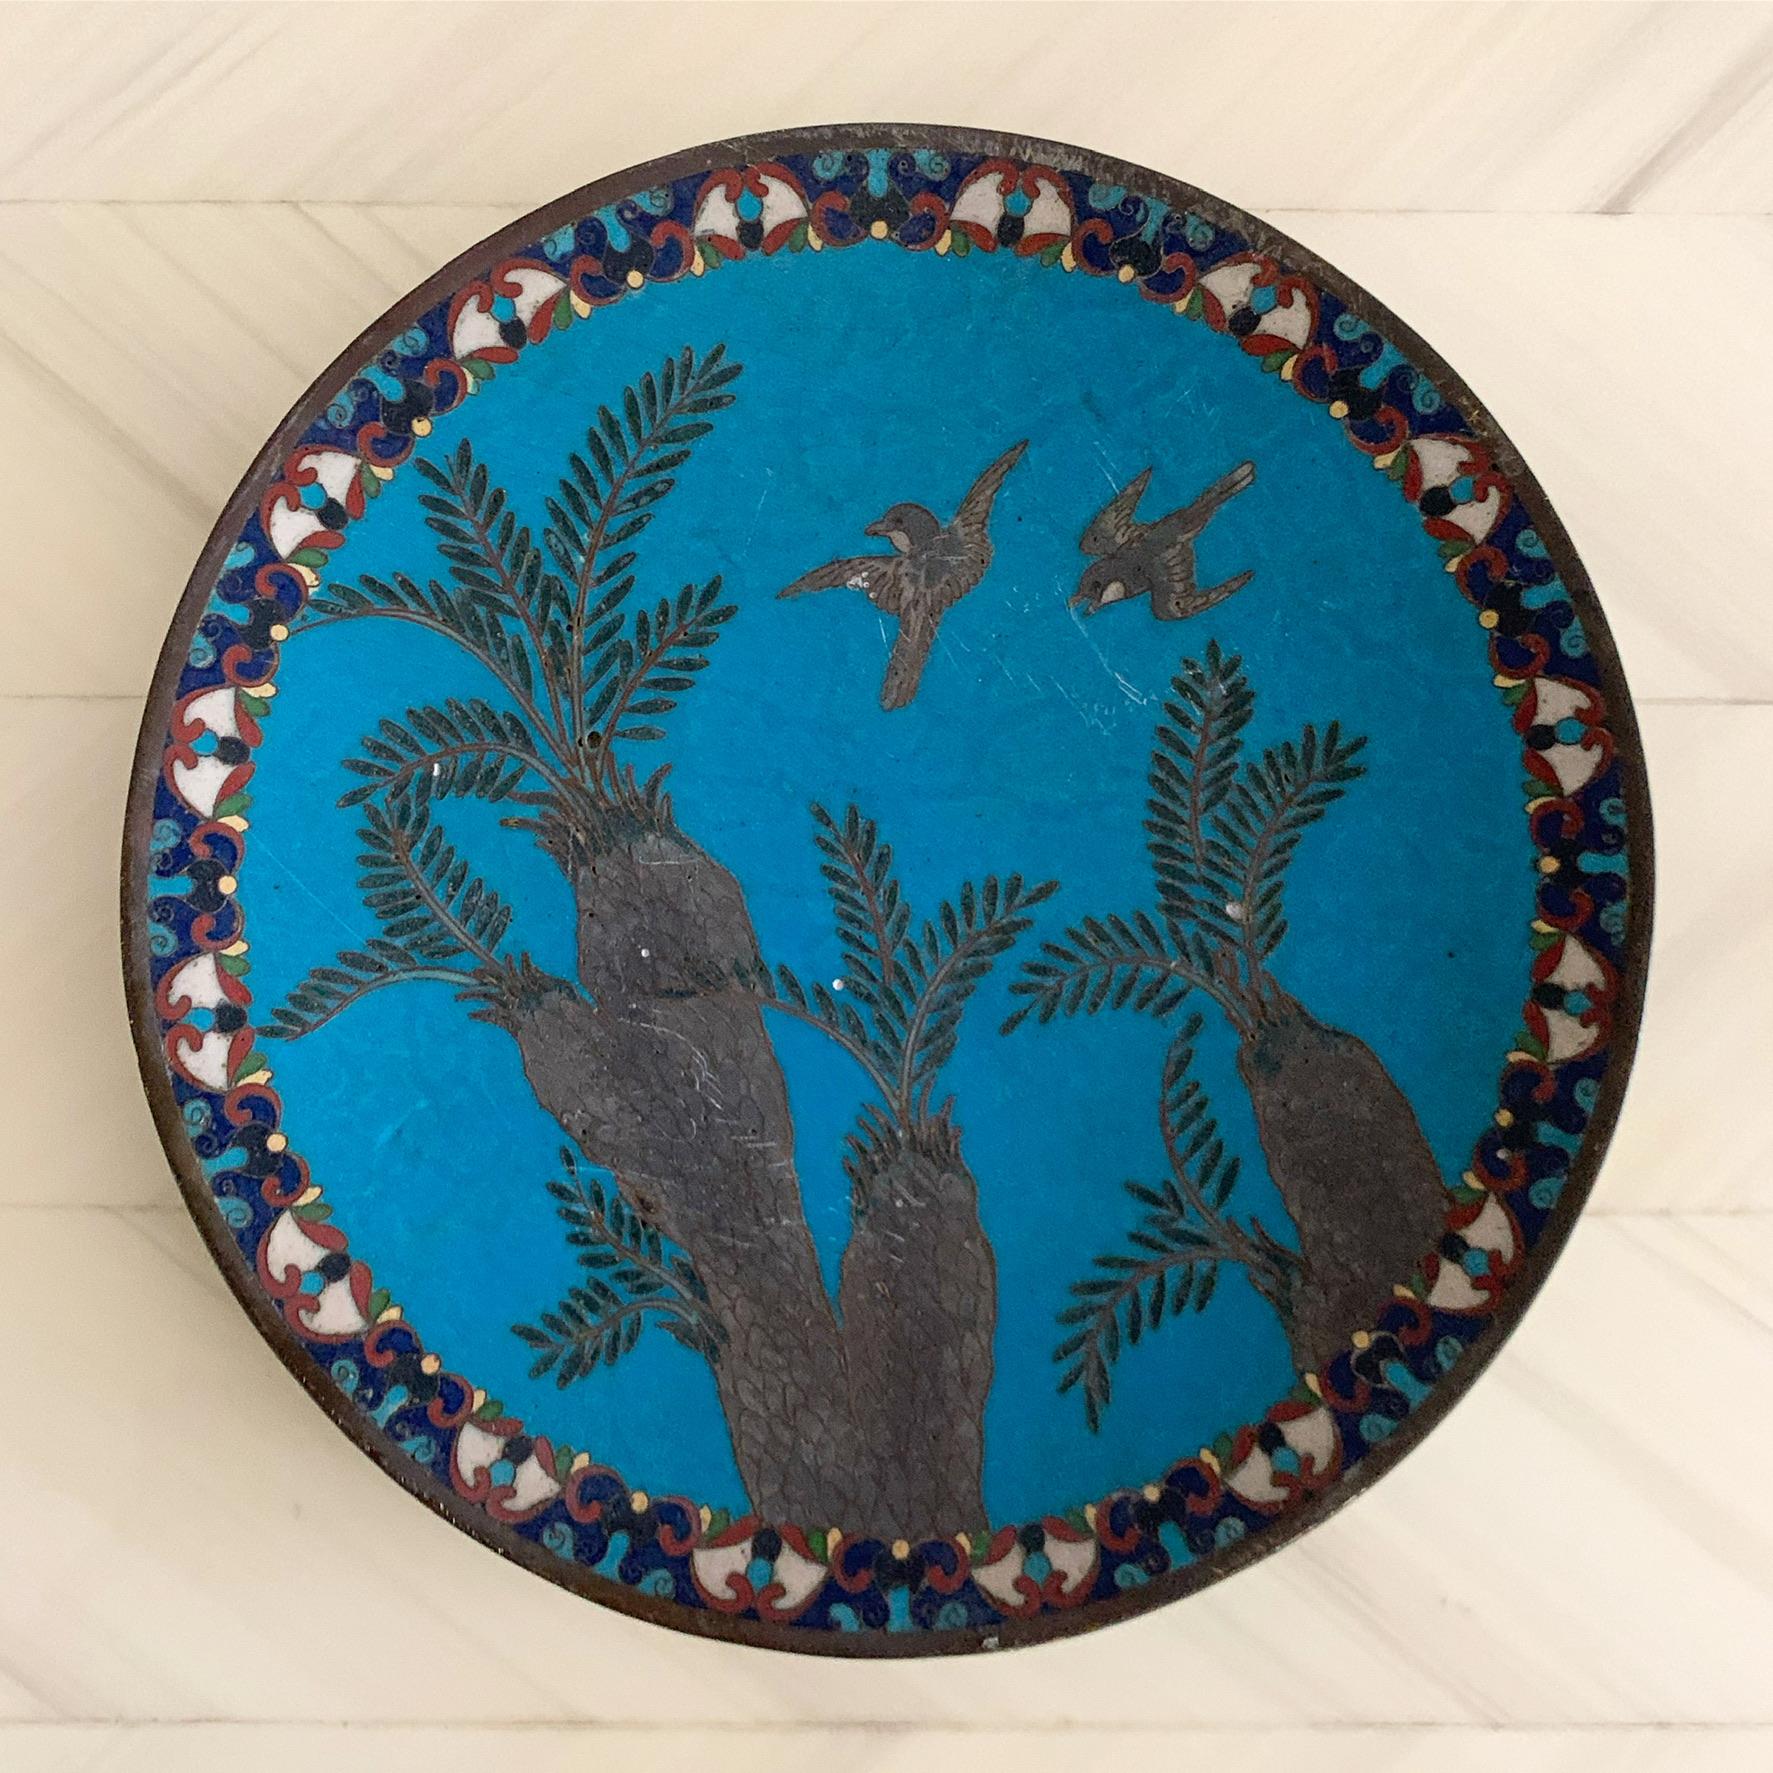 Antique Arabian Hand-Painted Metal Cloisonné Plate 6